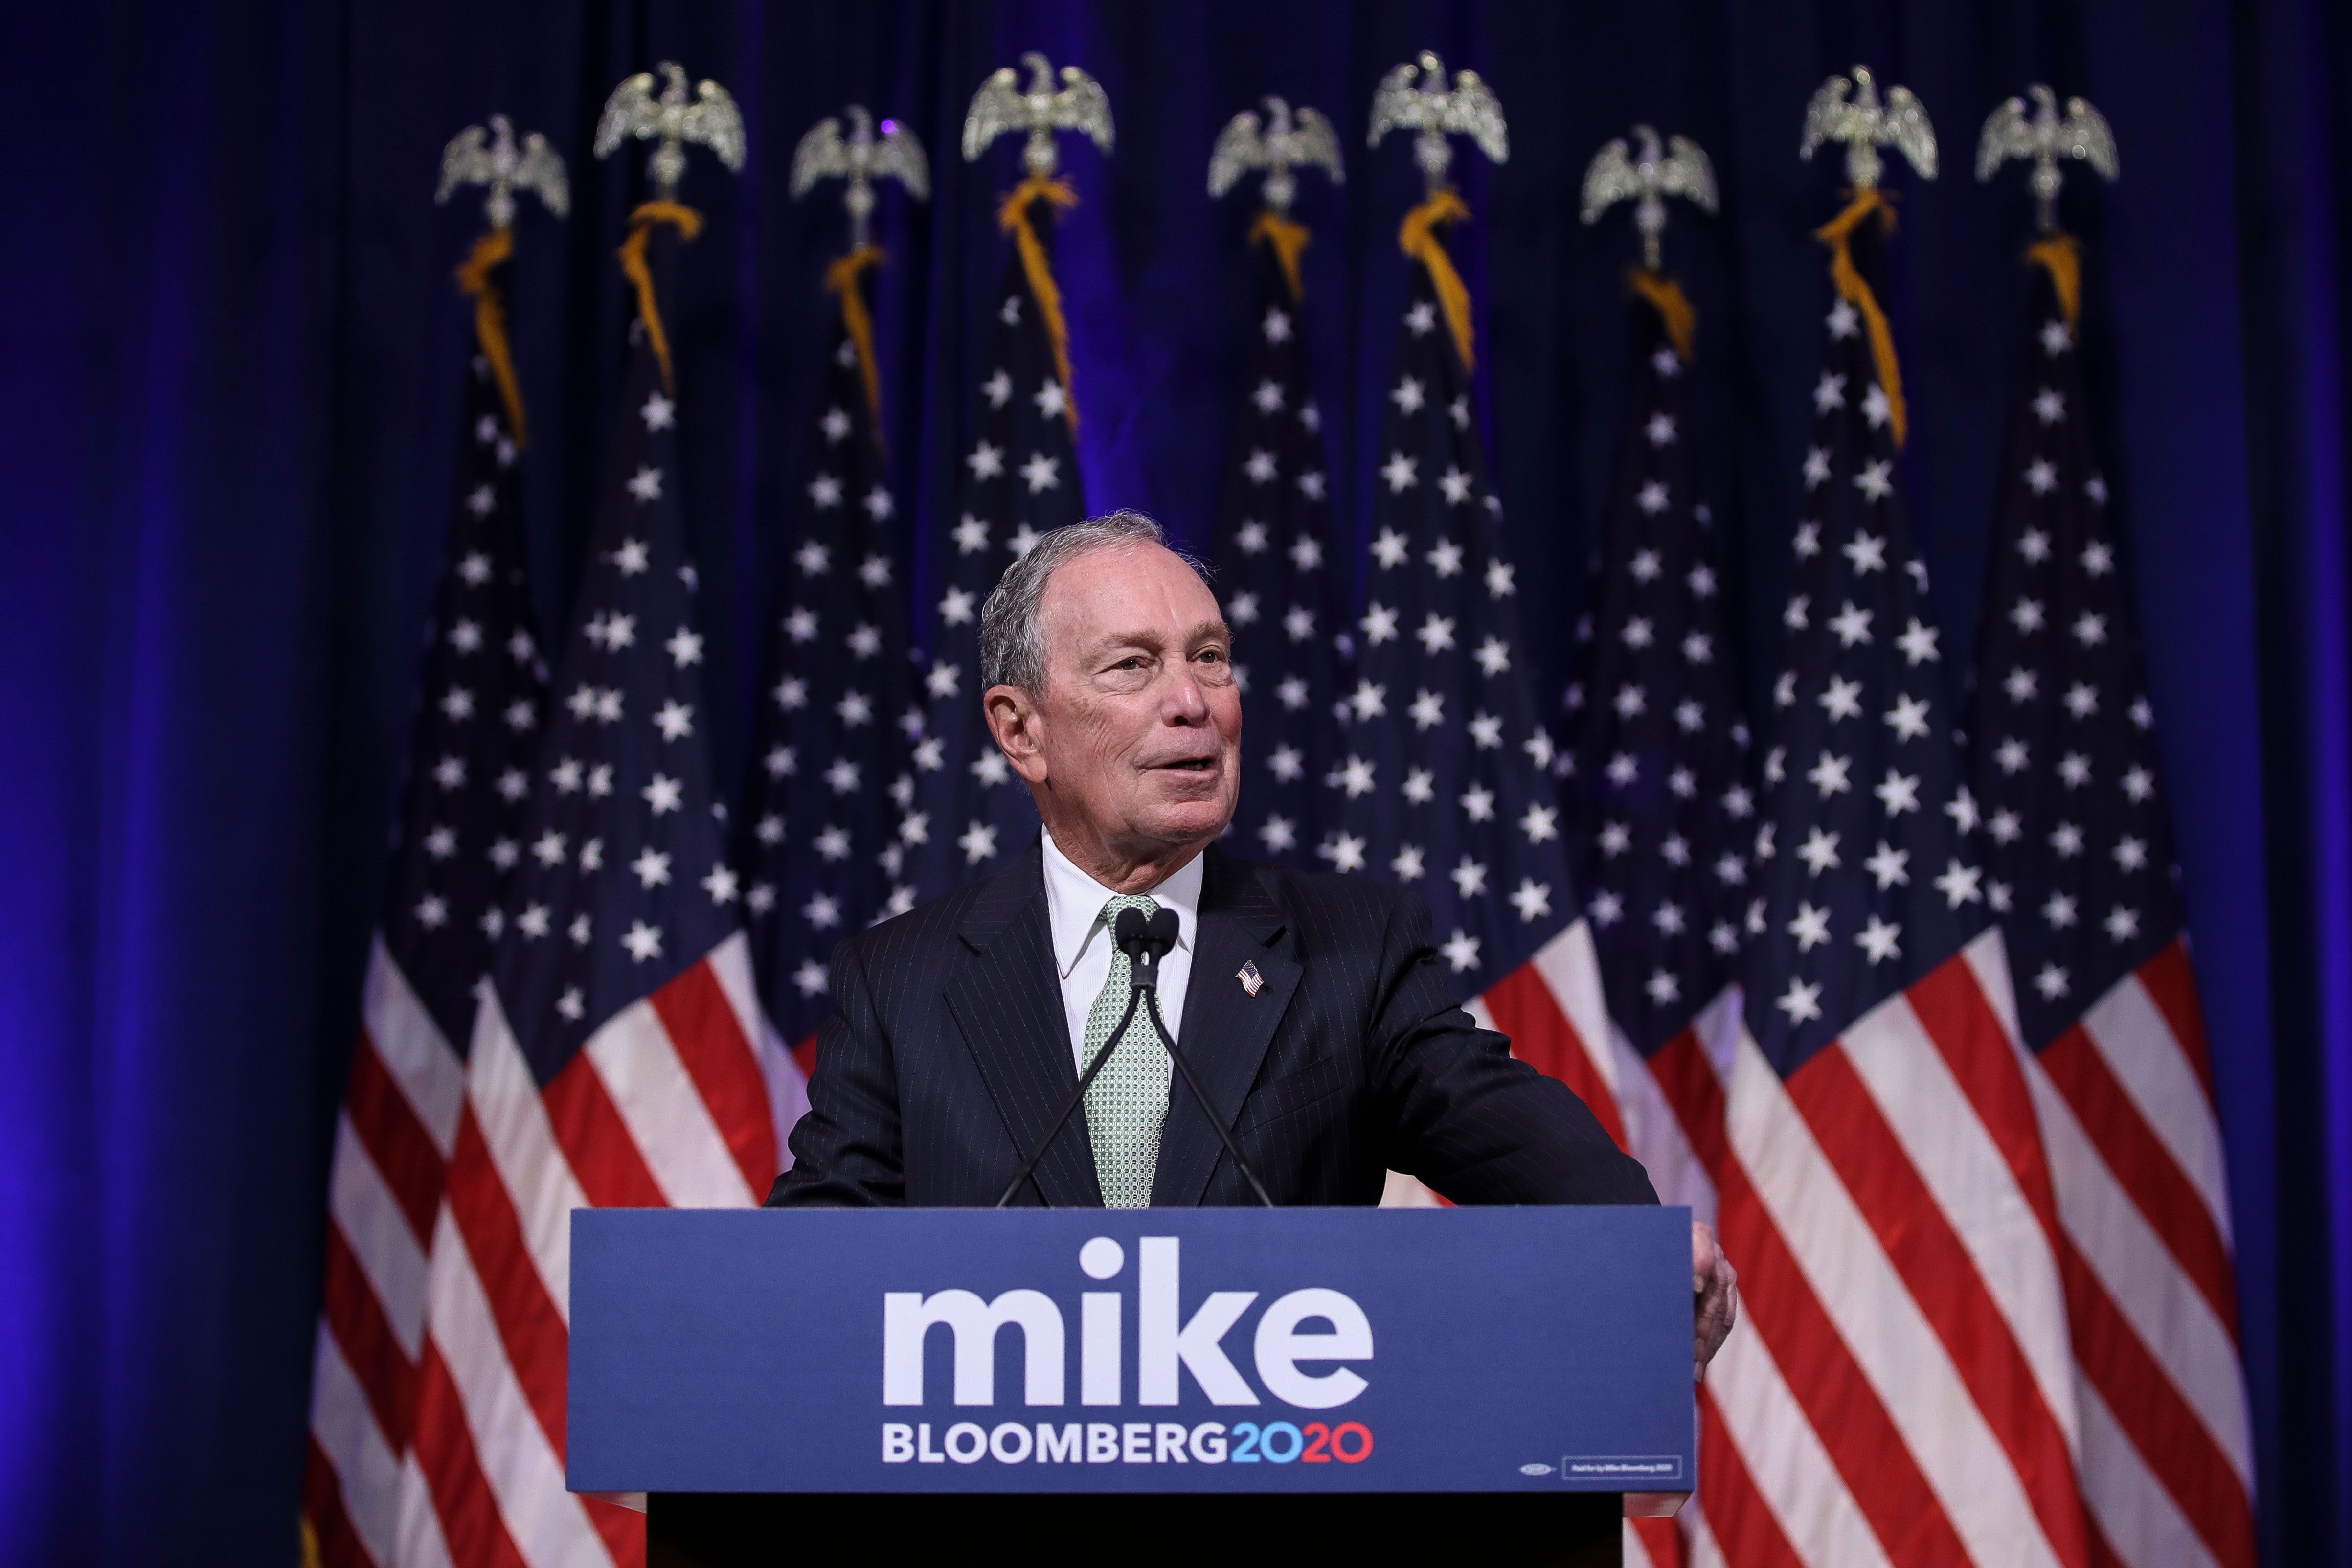 Lloyd Blankfein Is Now a Billionaire - Bloomberg